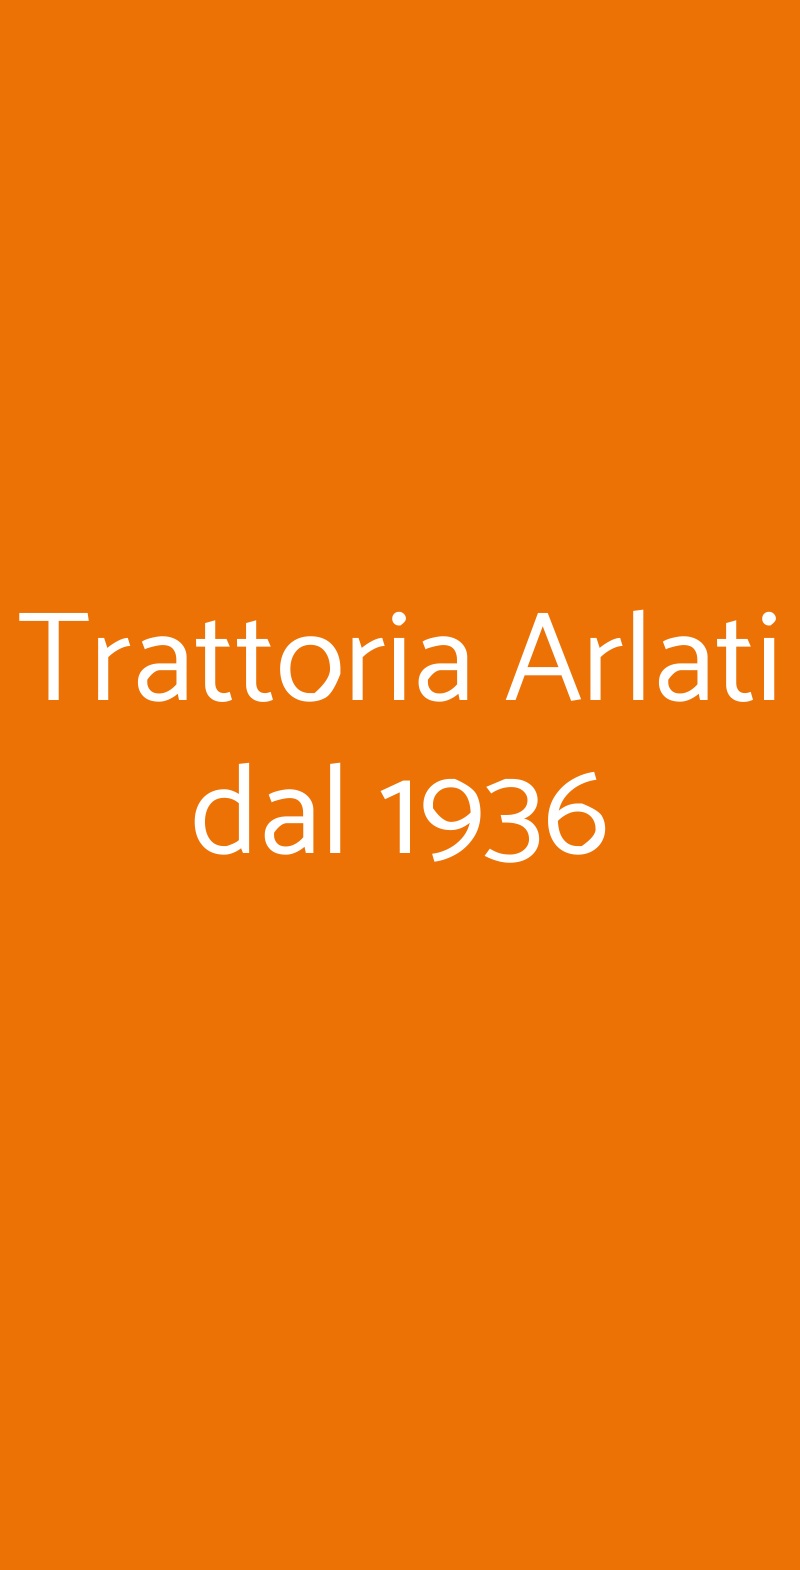 Trattoria Arlati dal 1936 Milano menù 1 pagina